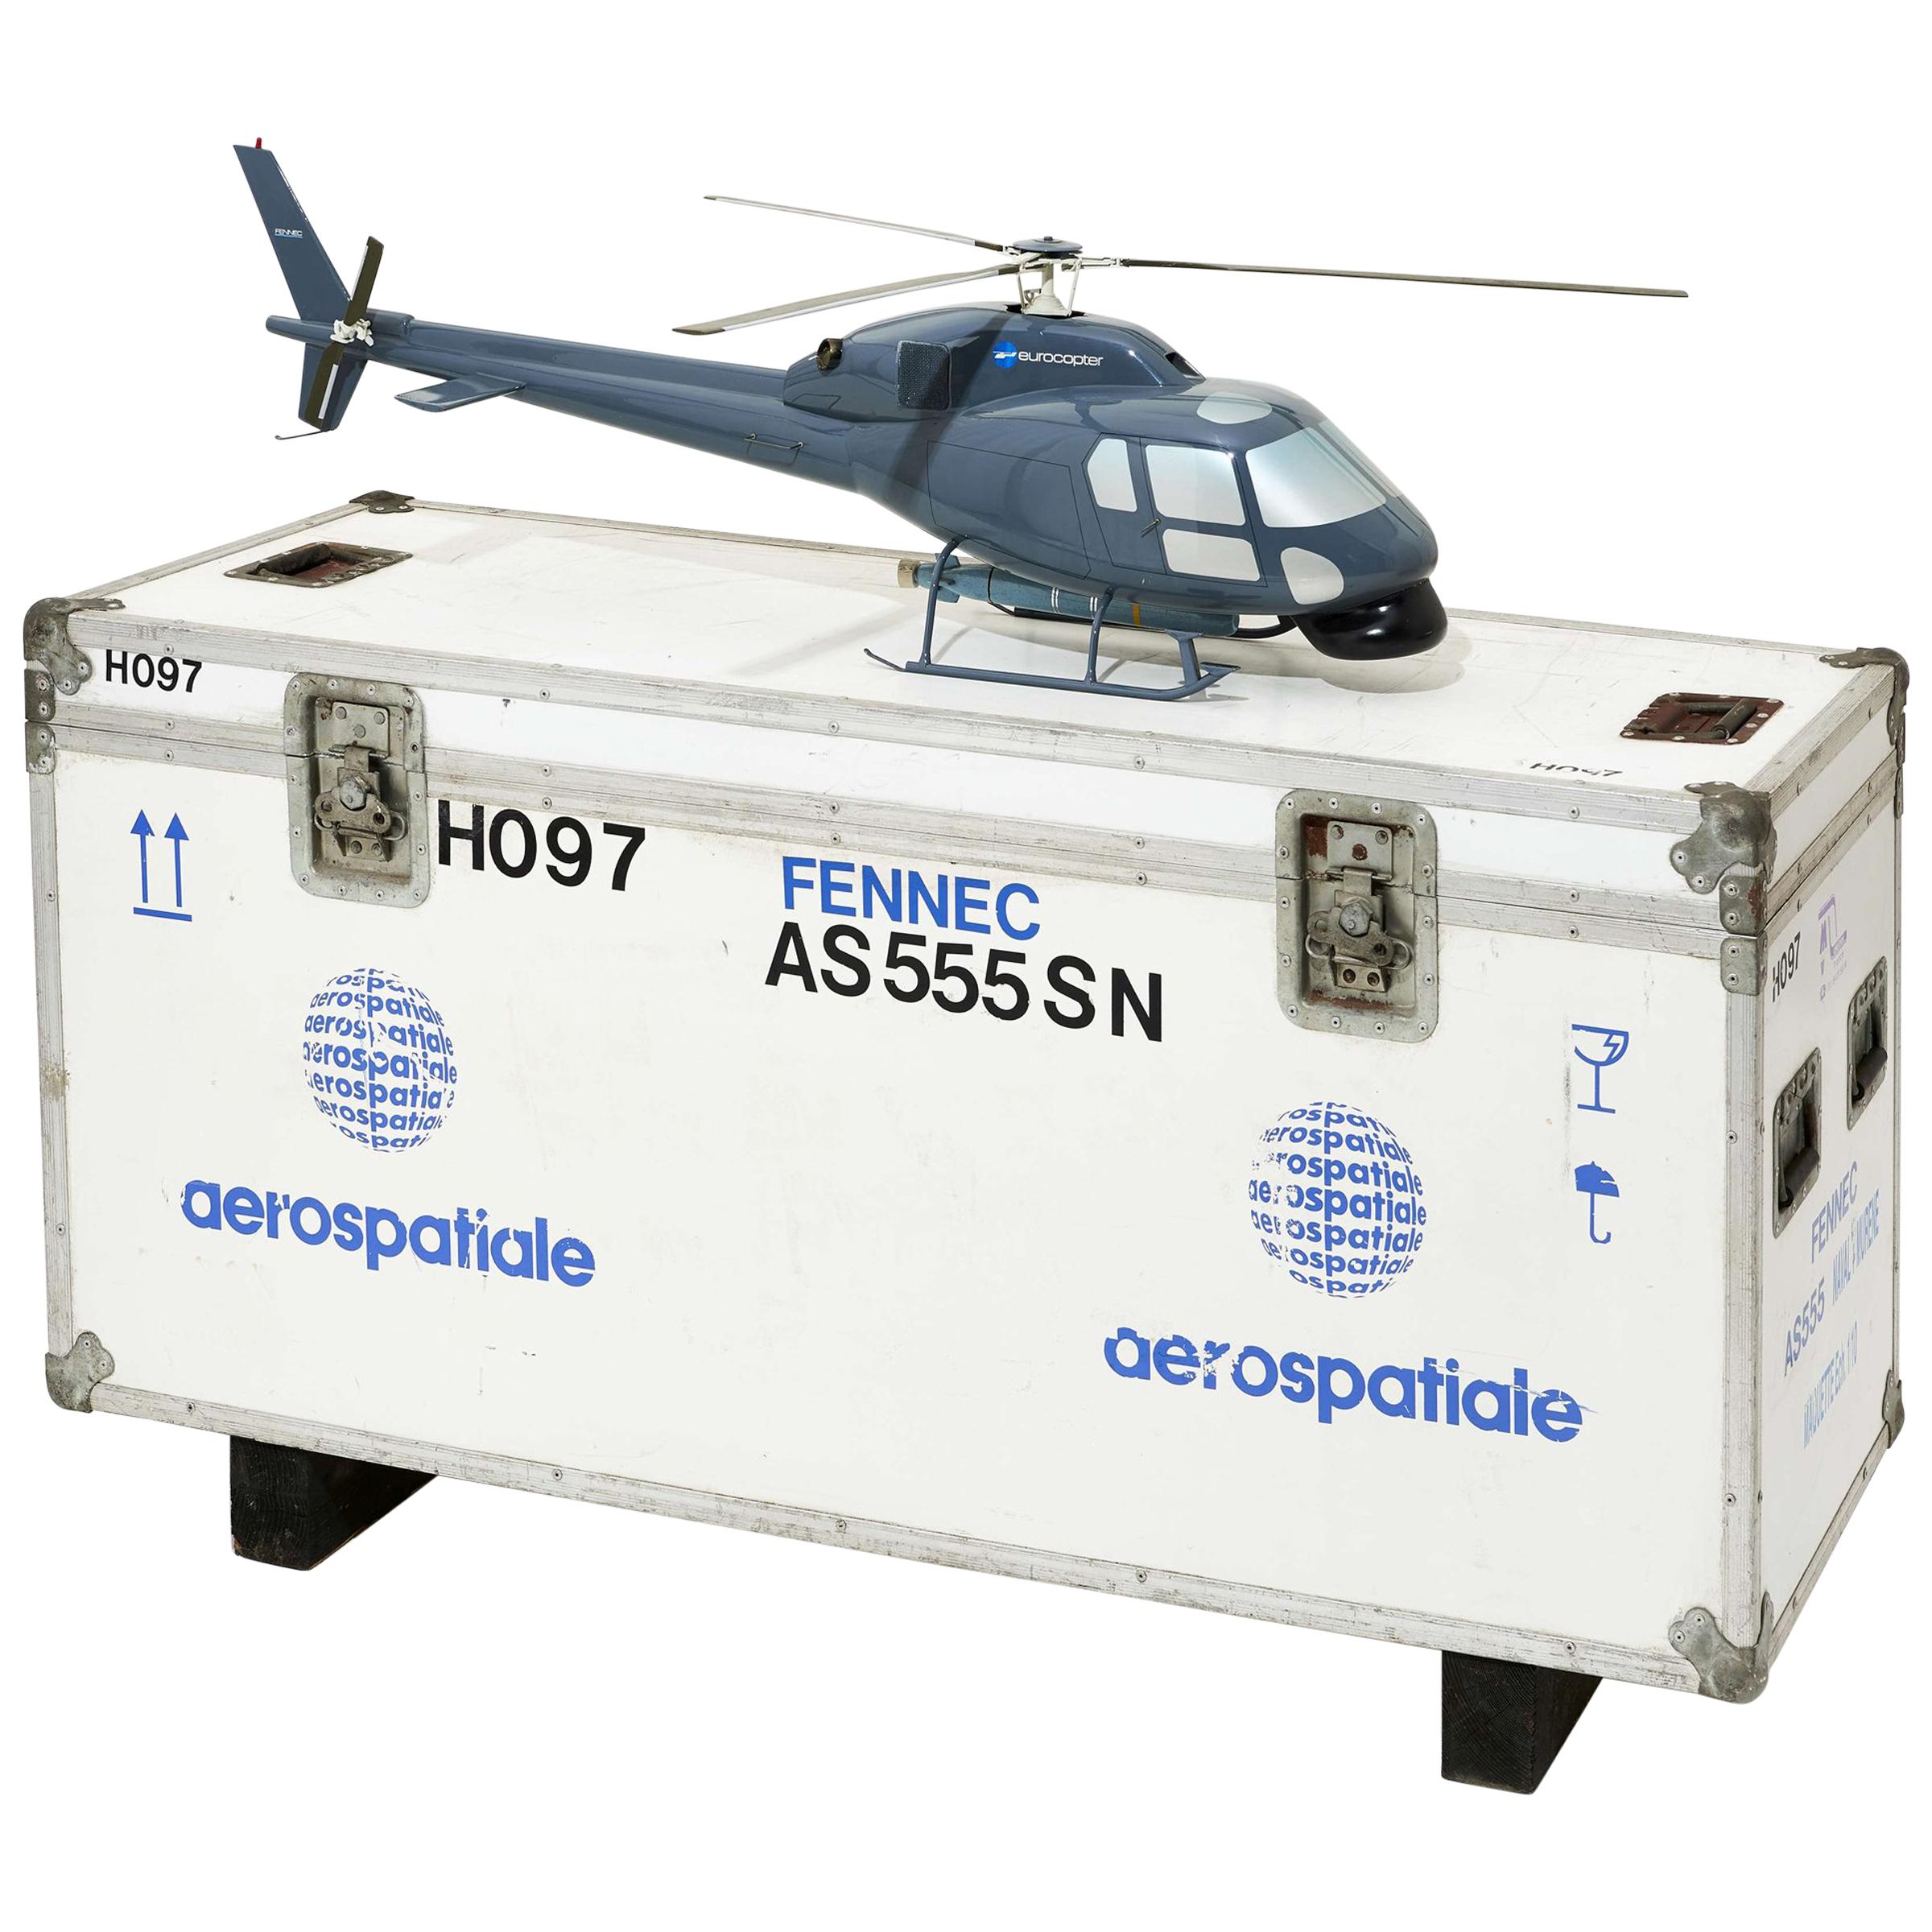 Modèle d'hélicoptère AS555 avec boîte de transport Fennec